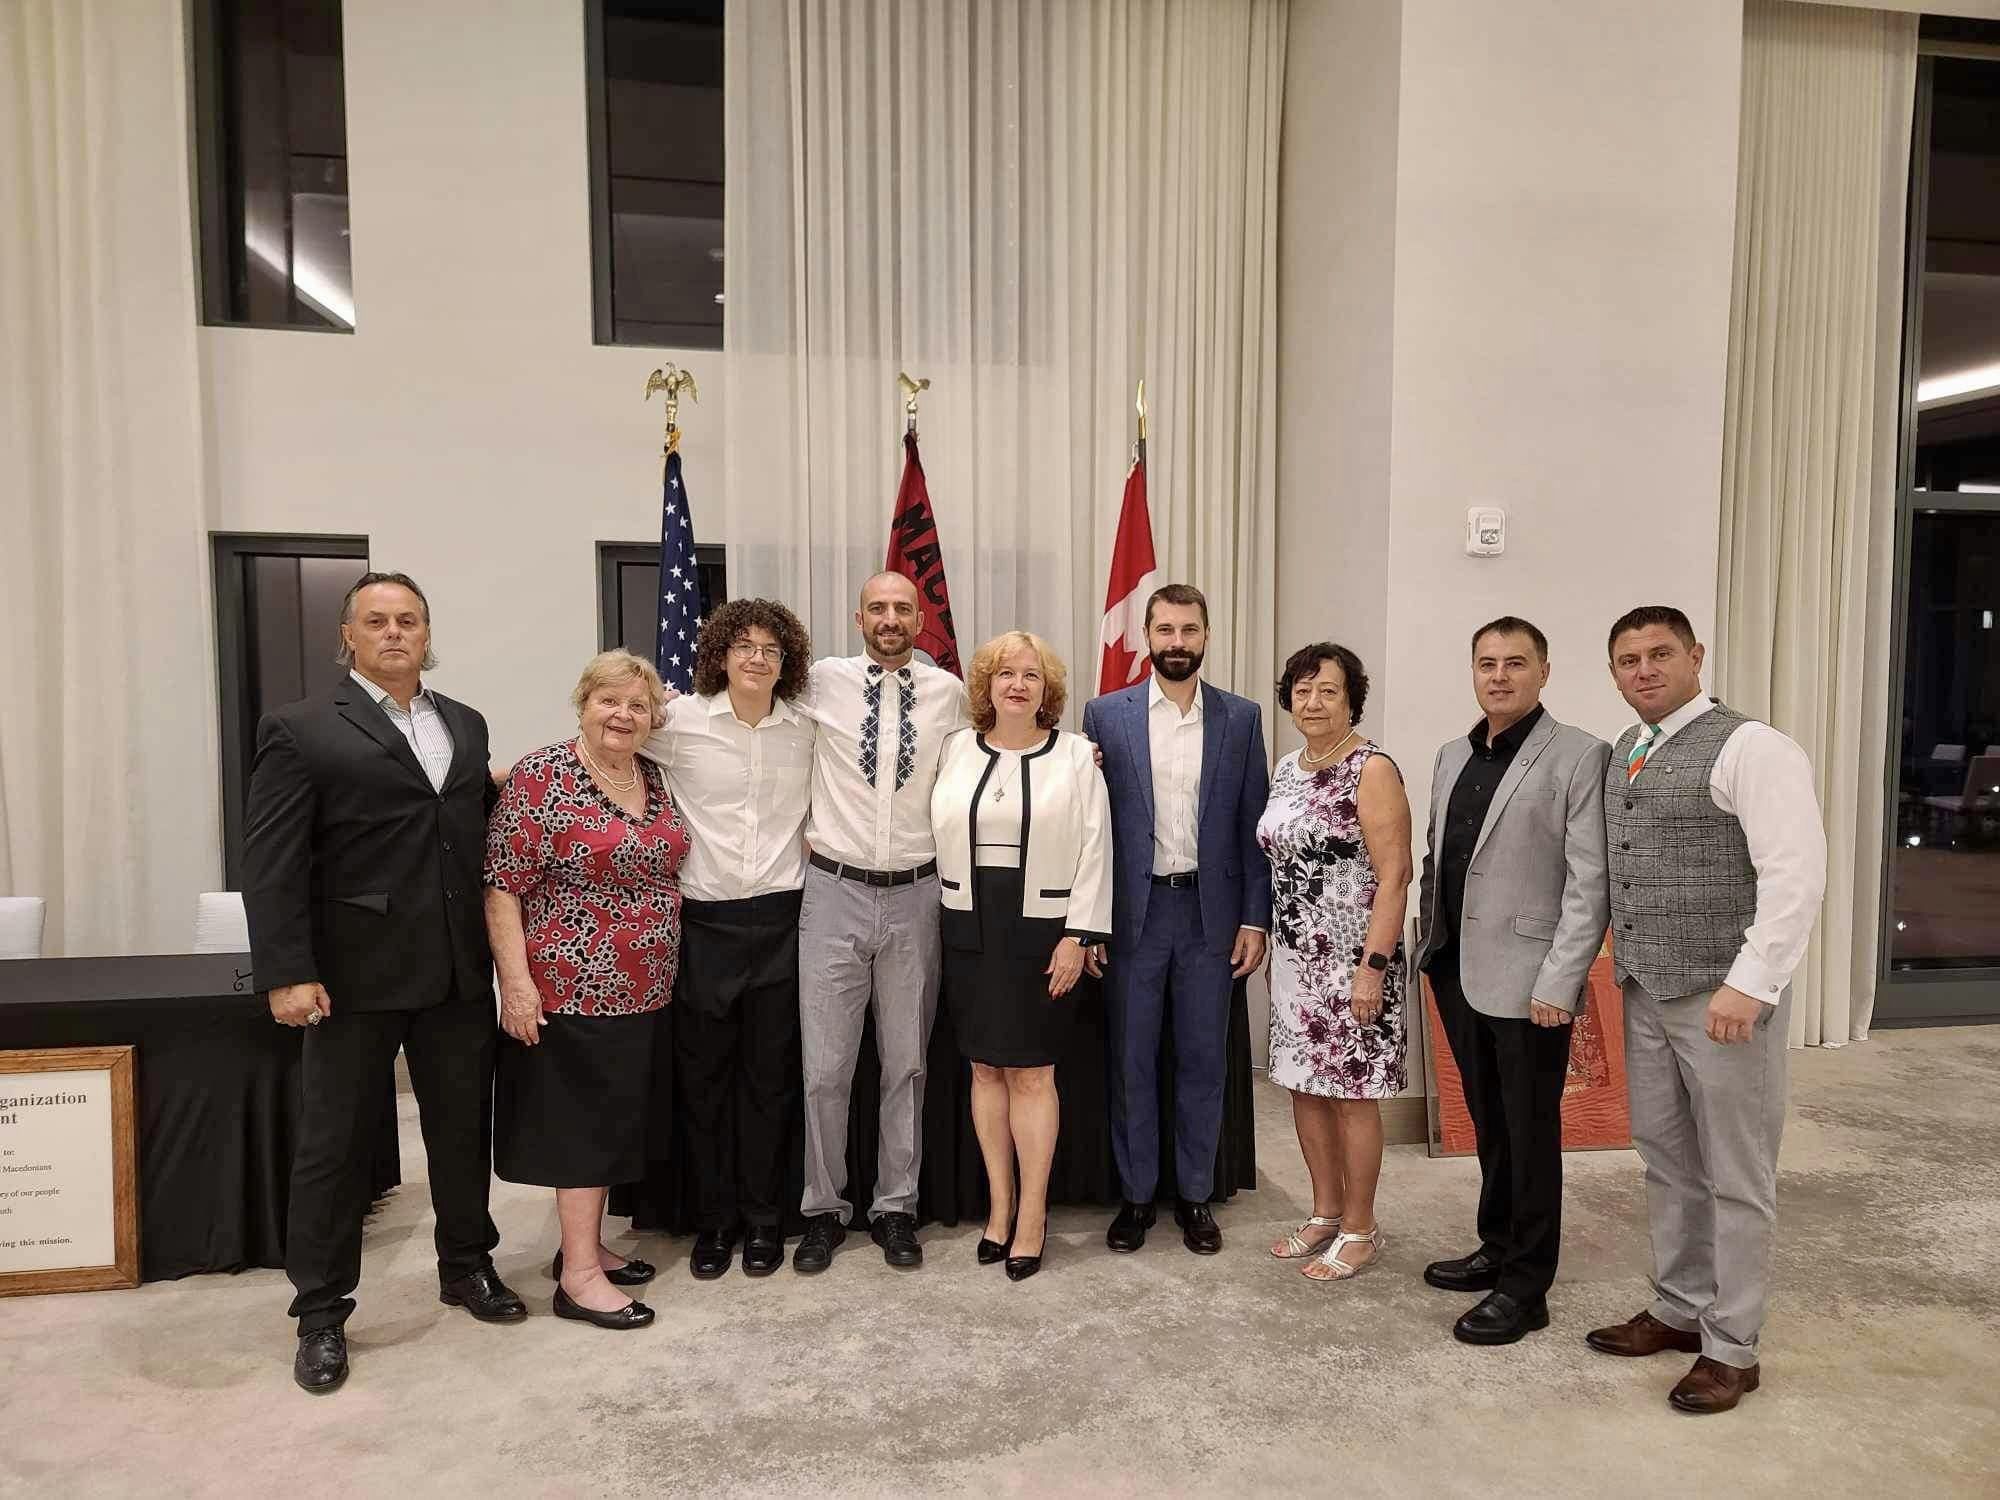 Македонската патриотична организация в САЩ и Канада проведе своя 101-ви Конгрес в Кълъмбъс, щата Охайо.